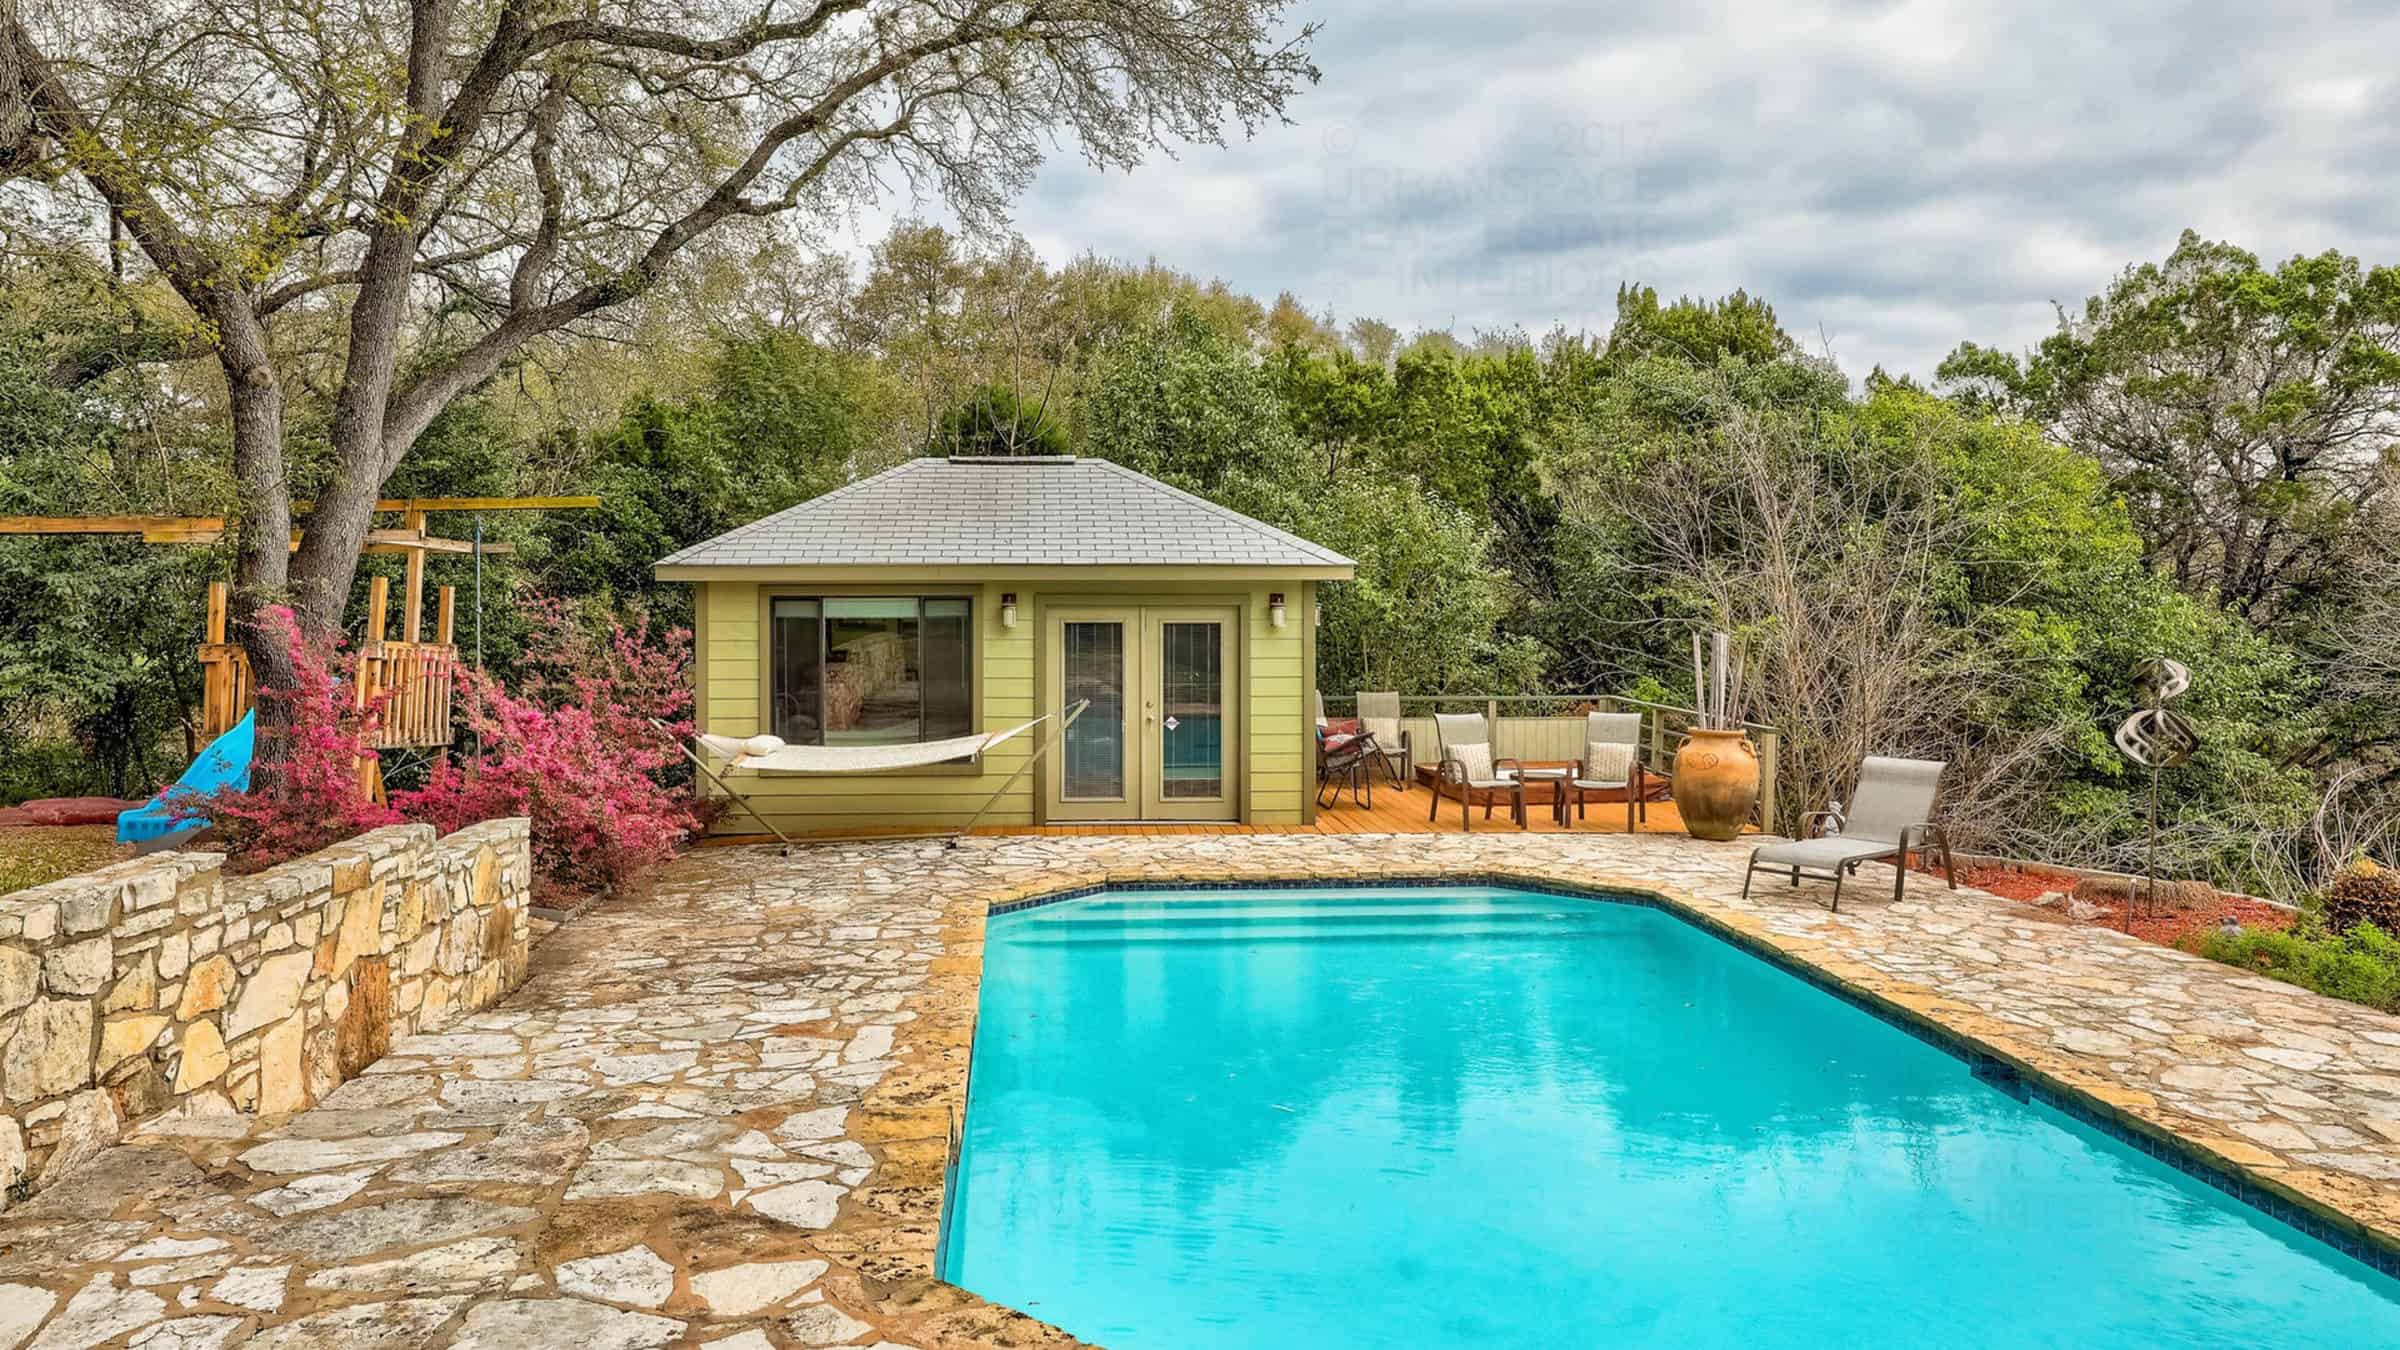 smoky ridge pool and pool house spacious backyard